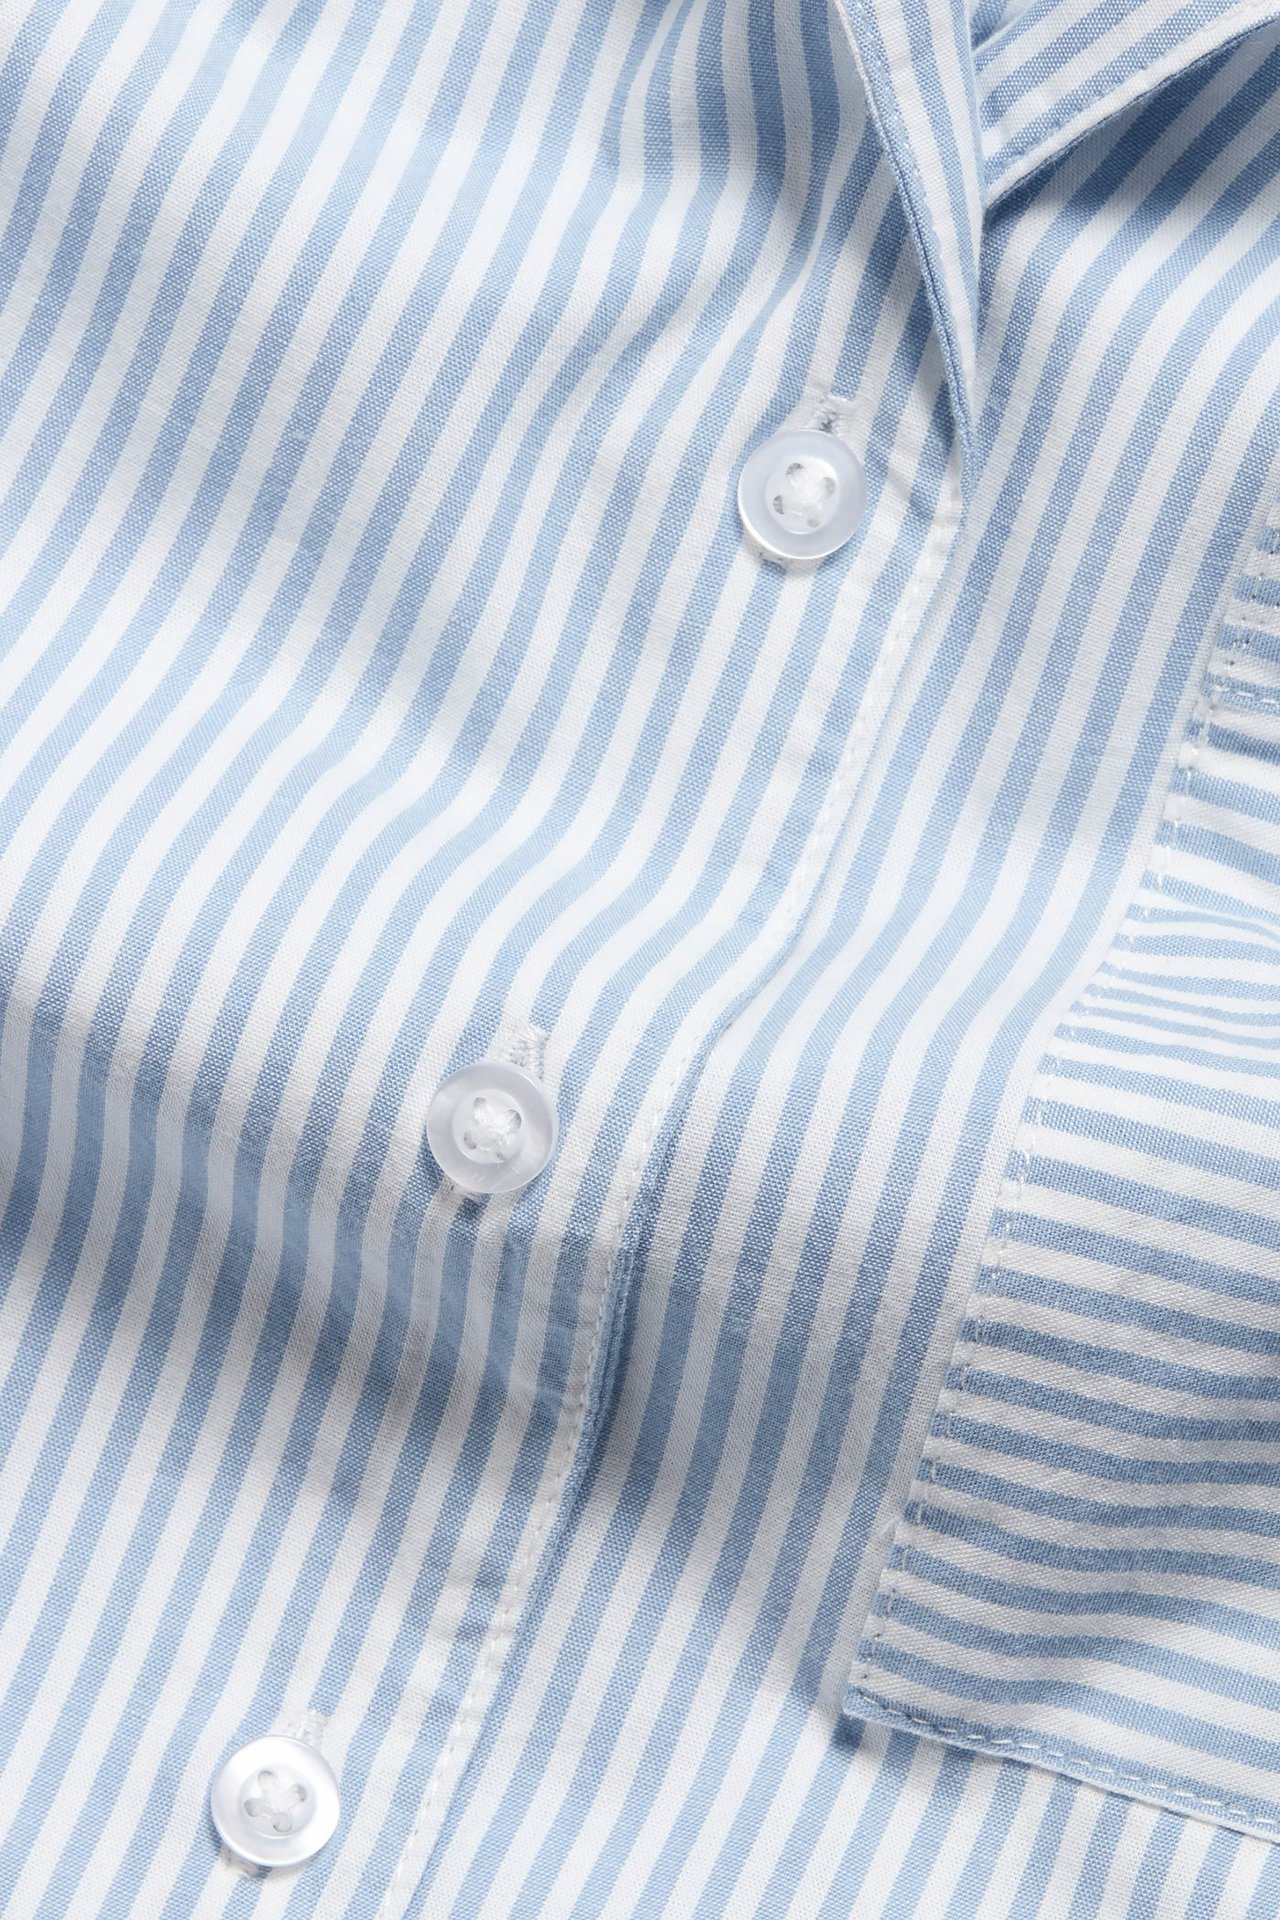 Pyjamasskjorte Blå - null - 7